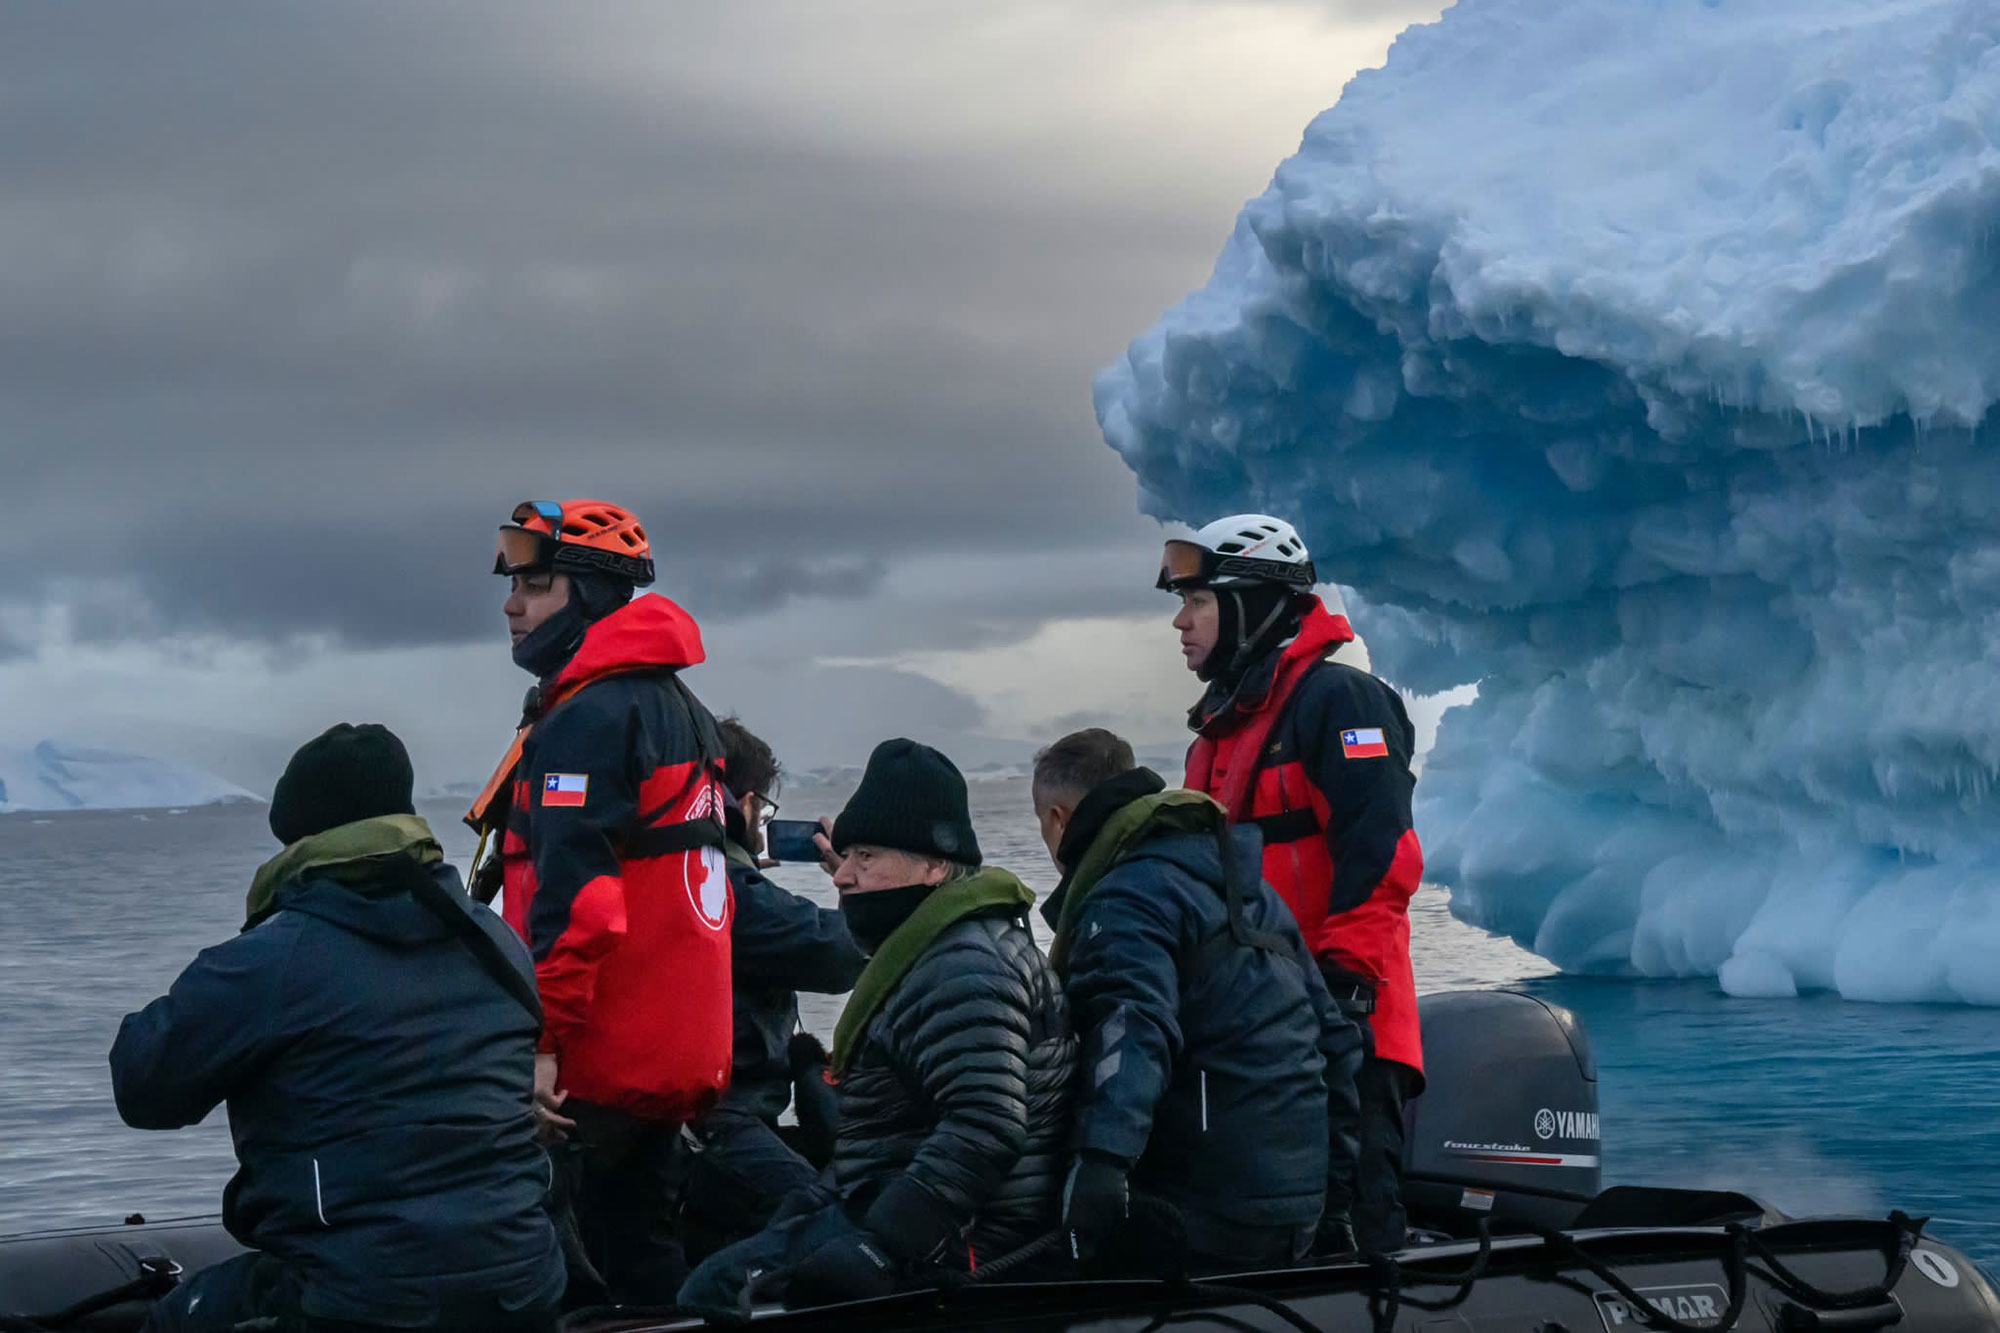 سیکرٹری جنرل انتونیو گوتیرش دورہ انٹارکٹکا کے دوران برف کی تہوں کو دیکھ رہے ہیں۔